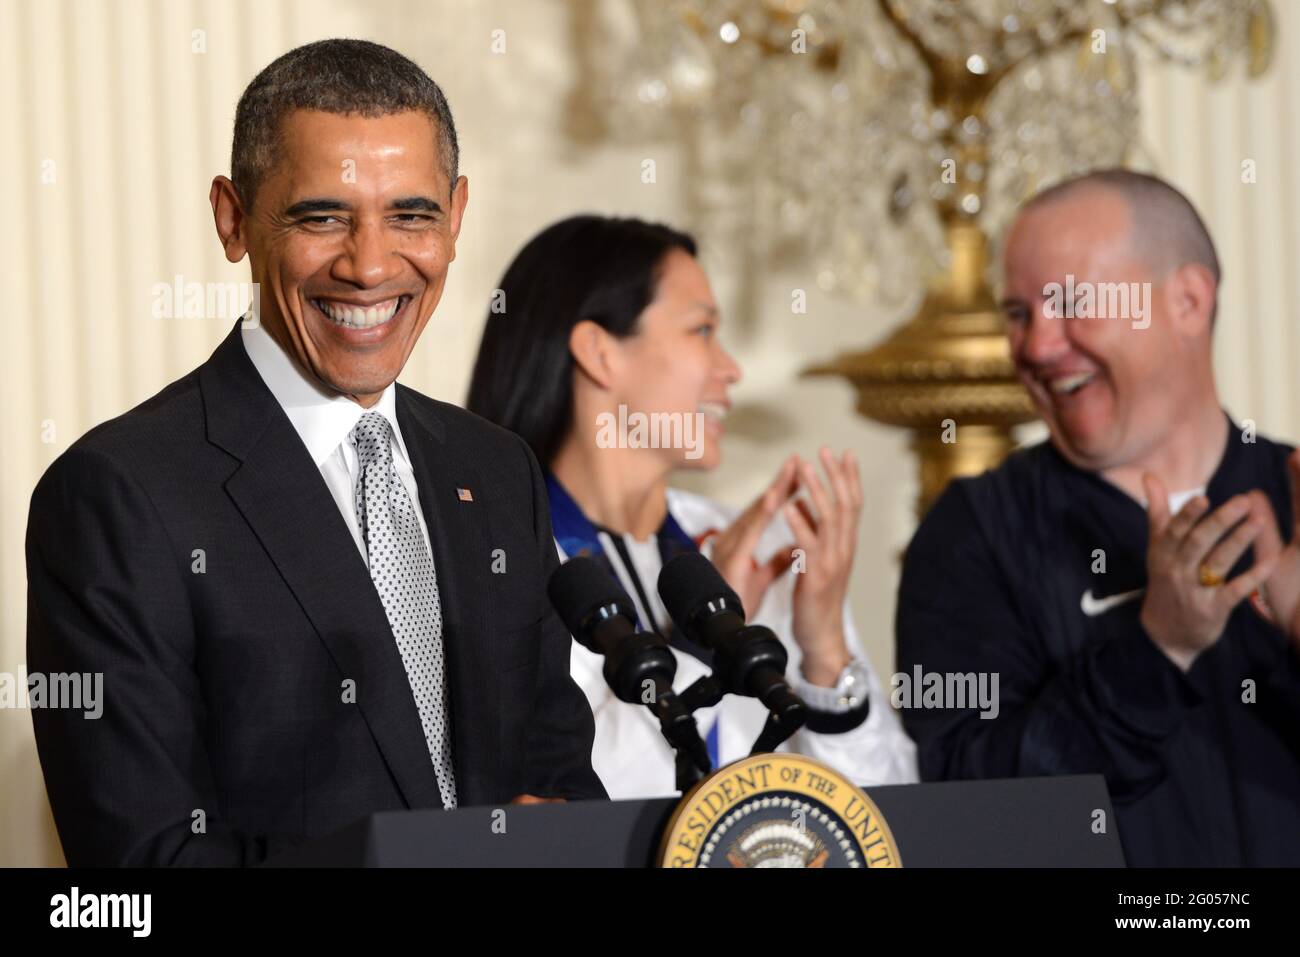 Reportage: Le président Barack Obama rit à un événement de la Maison Blanche qui rend hommage aux athlètes américains des Jeux olympiques et paralympiques d'hiver de 2014, Washington, D.C., le 3 avril 2014. Julie Chu et Jon Lujan (tout à droite) sont photographiés avec Obama. Banque D'Images